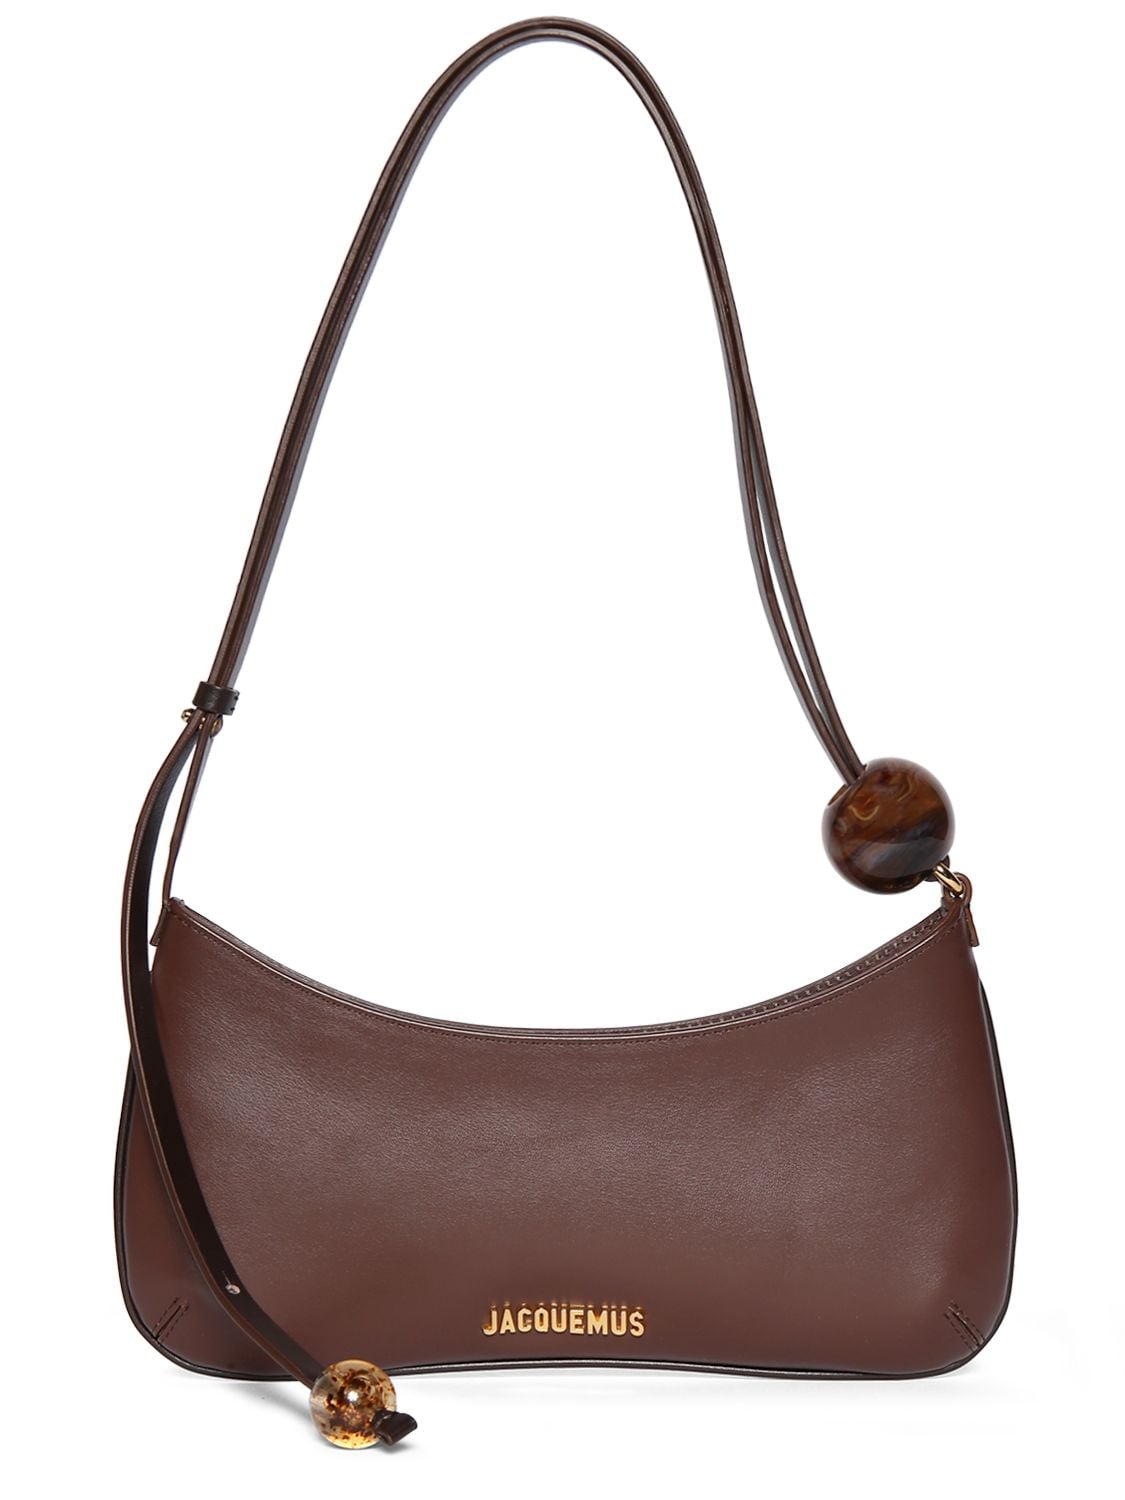 Brown Bisou bead-embellished leather shoulder bag, Jacquemus